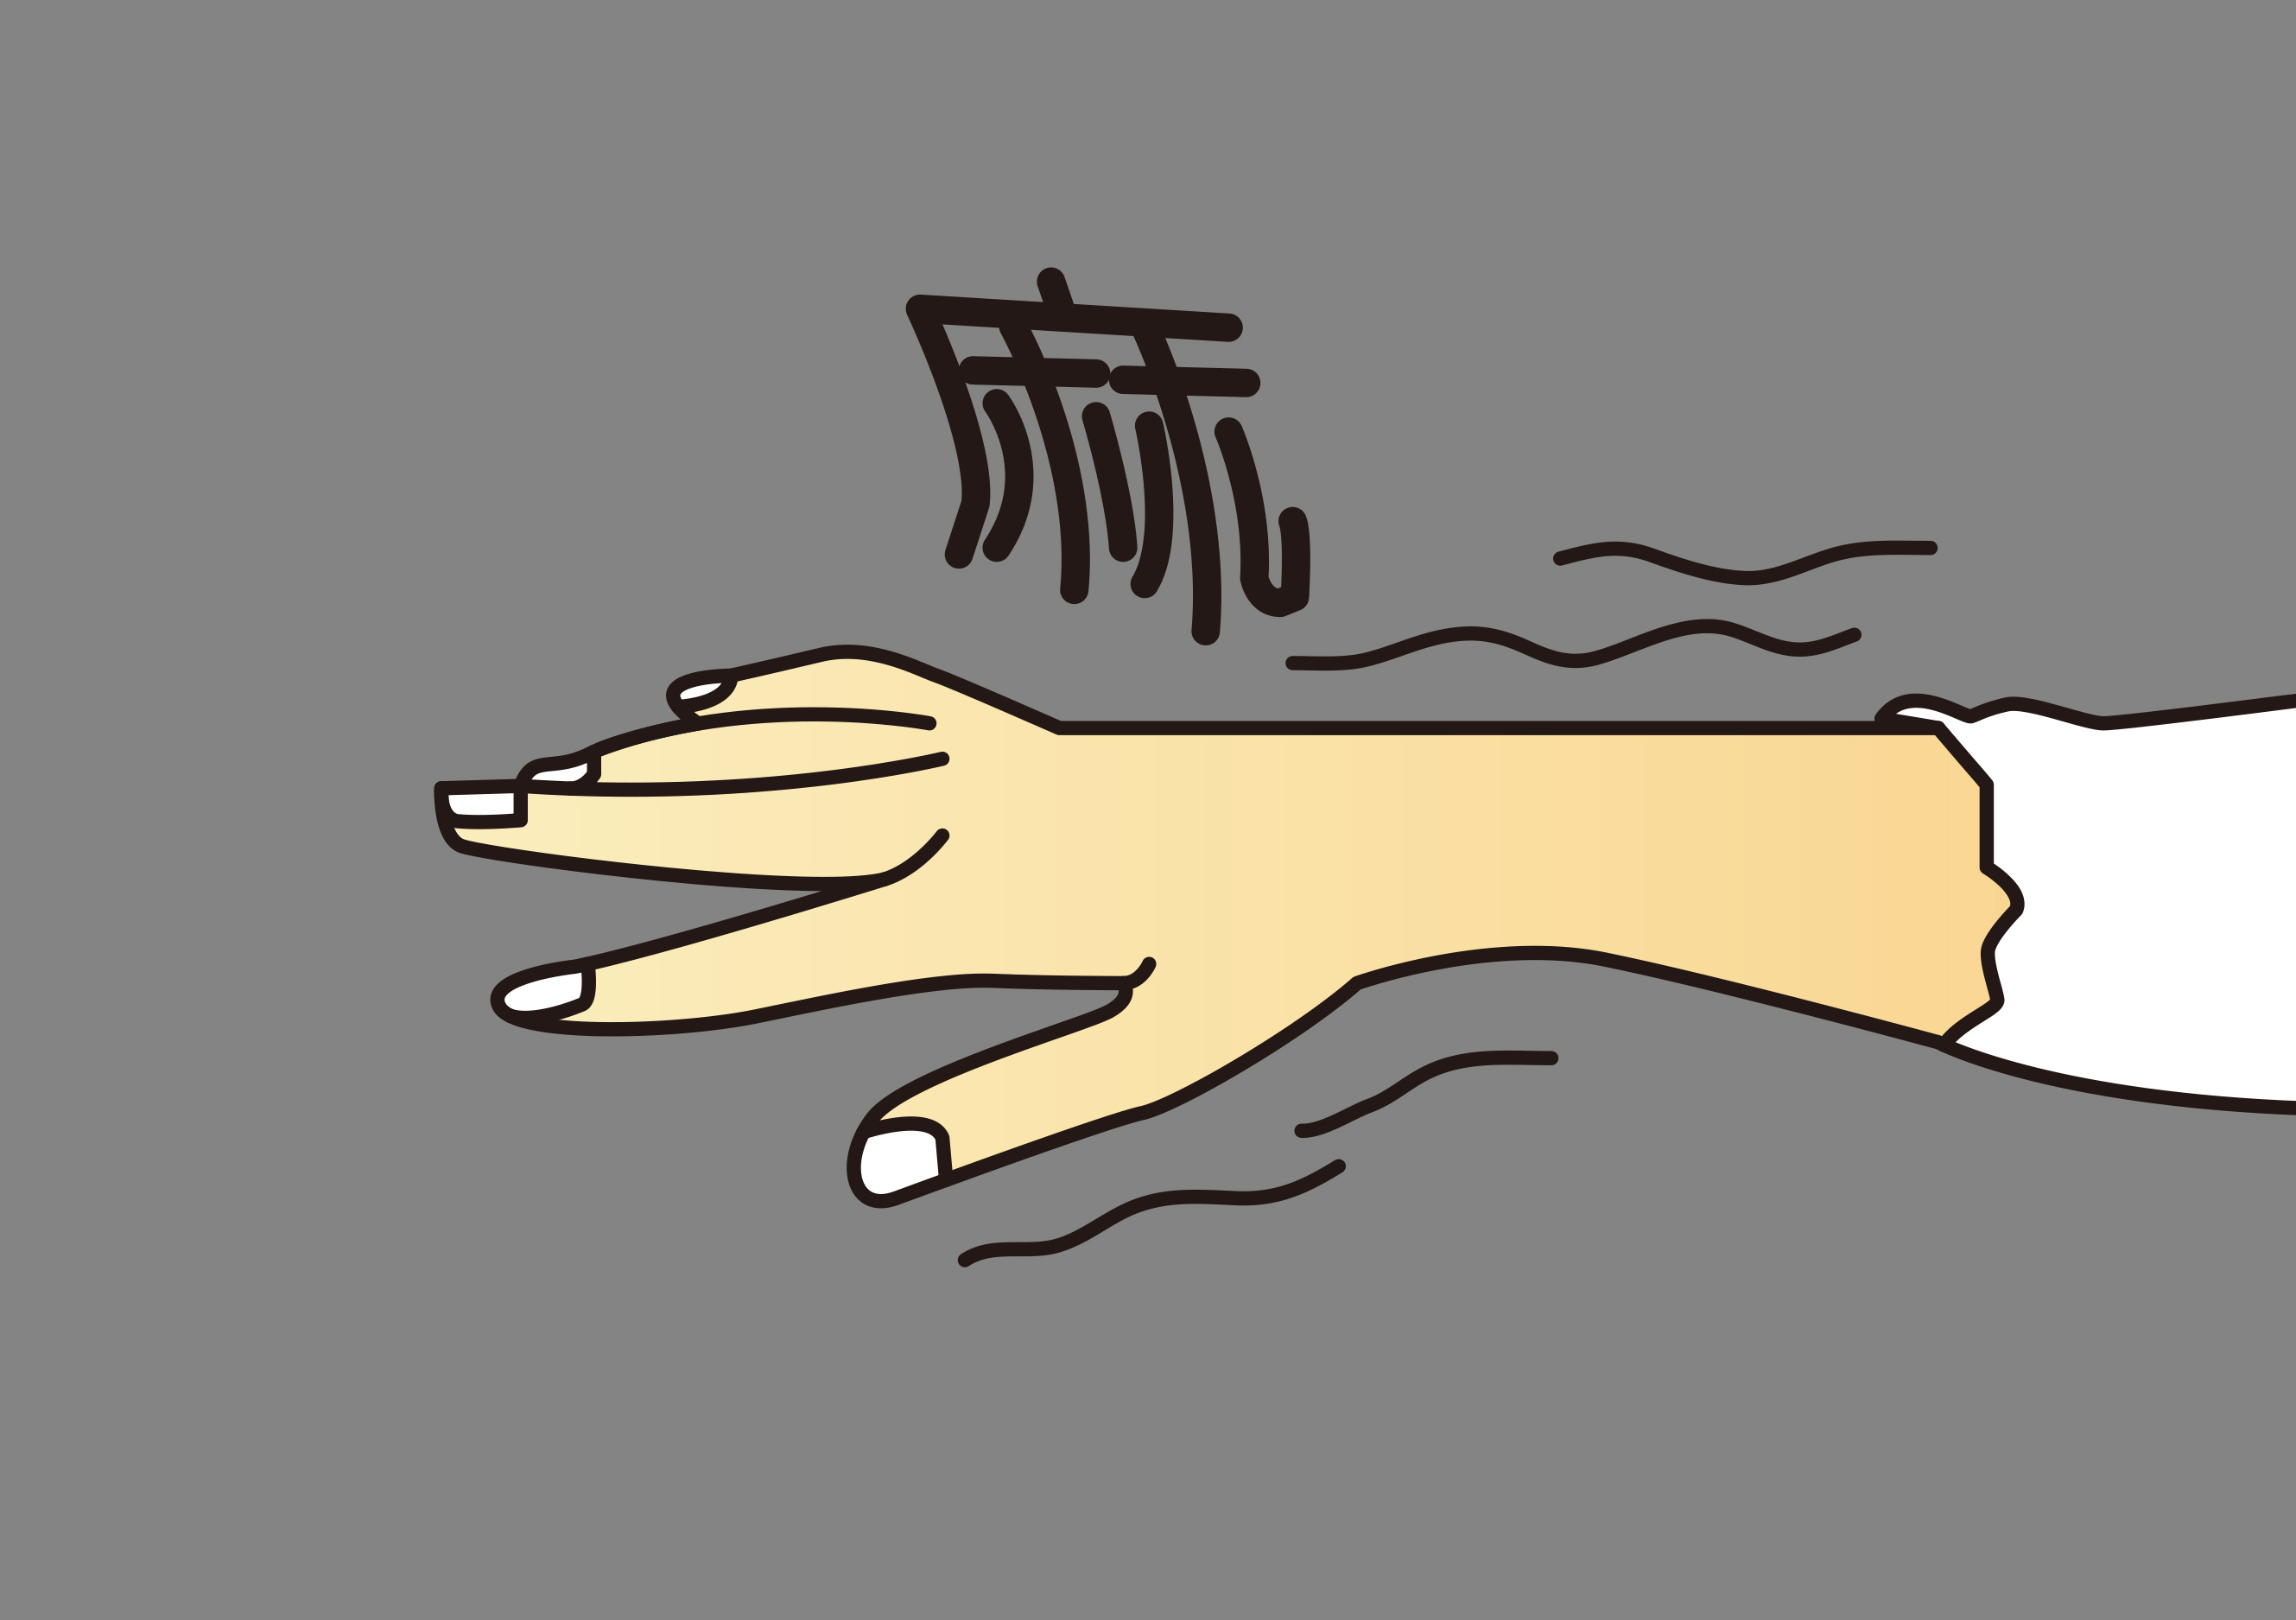 手脚麻木可能是大病的前兆！看倪海厦用几味药横扫冰凉麻木、疼痛 - 哔哩哔哩